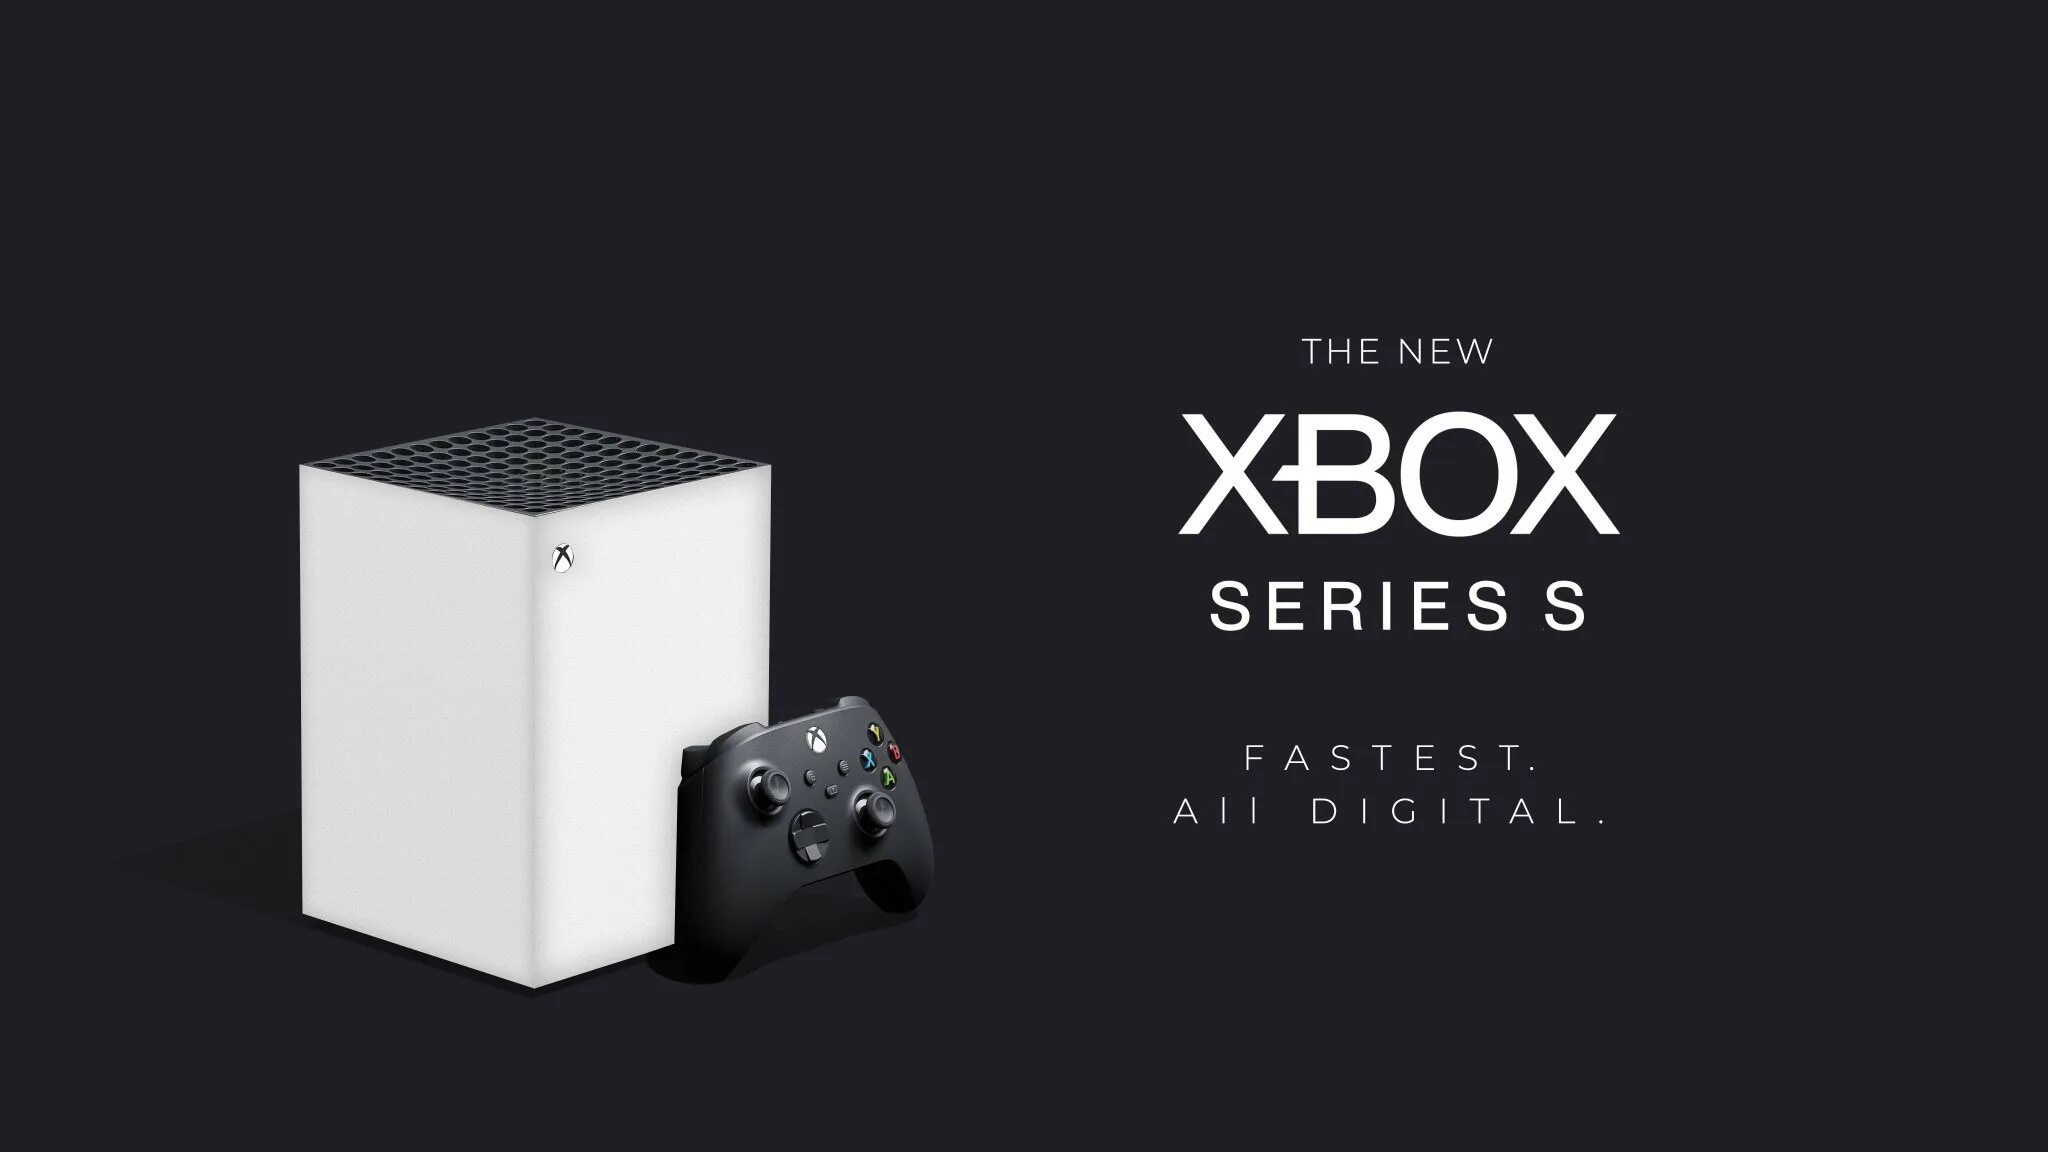 Хвох Series s. Xbox Series s. Microsoft Xbox Series s 512 ГБ. Xbox Series x Cube. Xbox series s 4pda